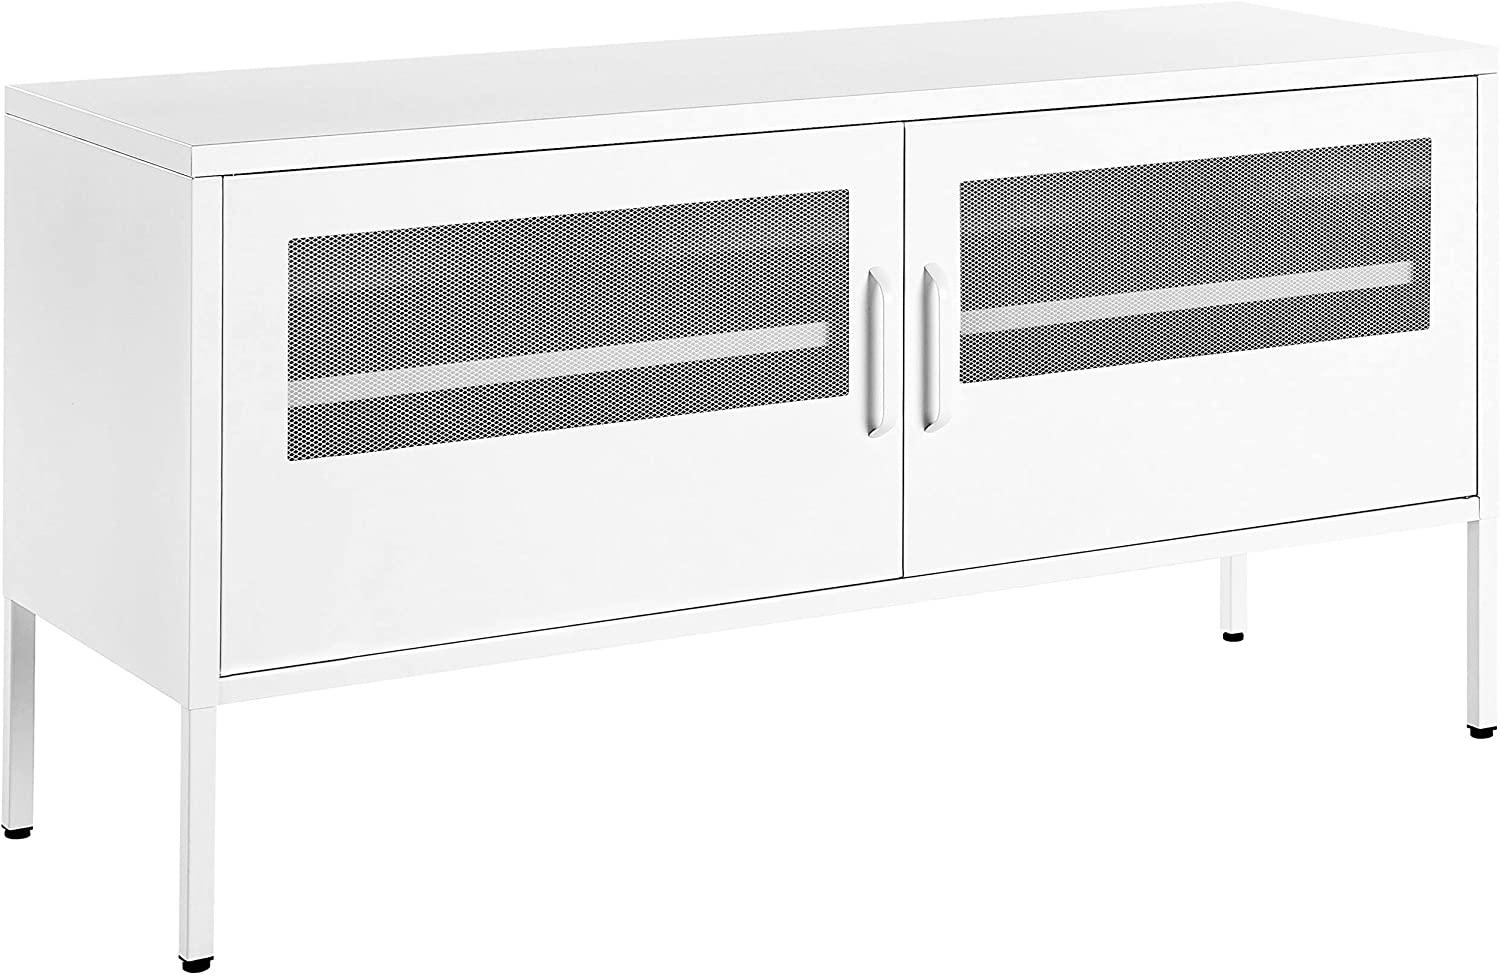 Schrank mit 2 durchsichtigen Gittertüren, 2 Regalböden & 2 Griffen, Stahl, 40 x 118 x 60 cm, Weiß Bild 1